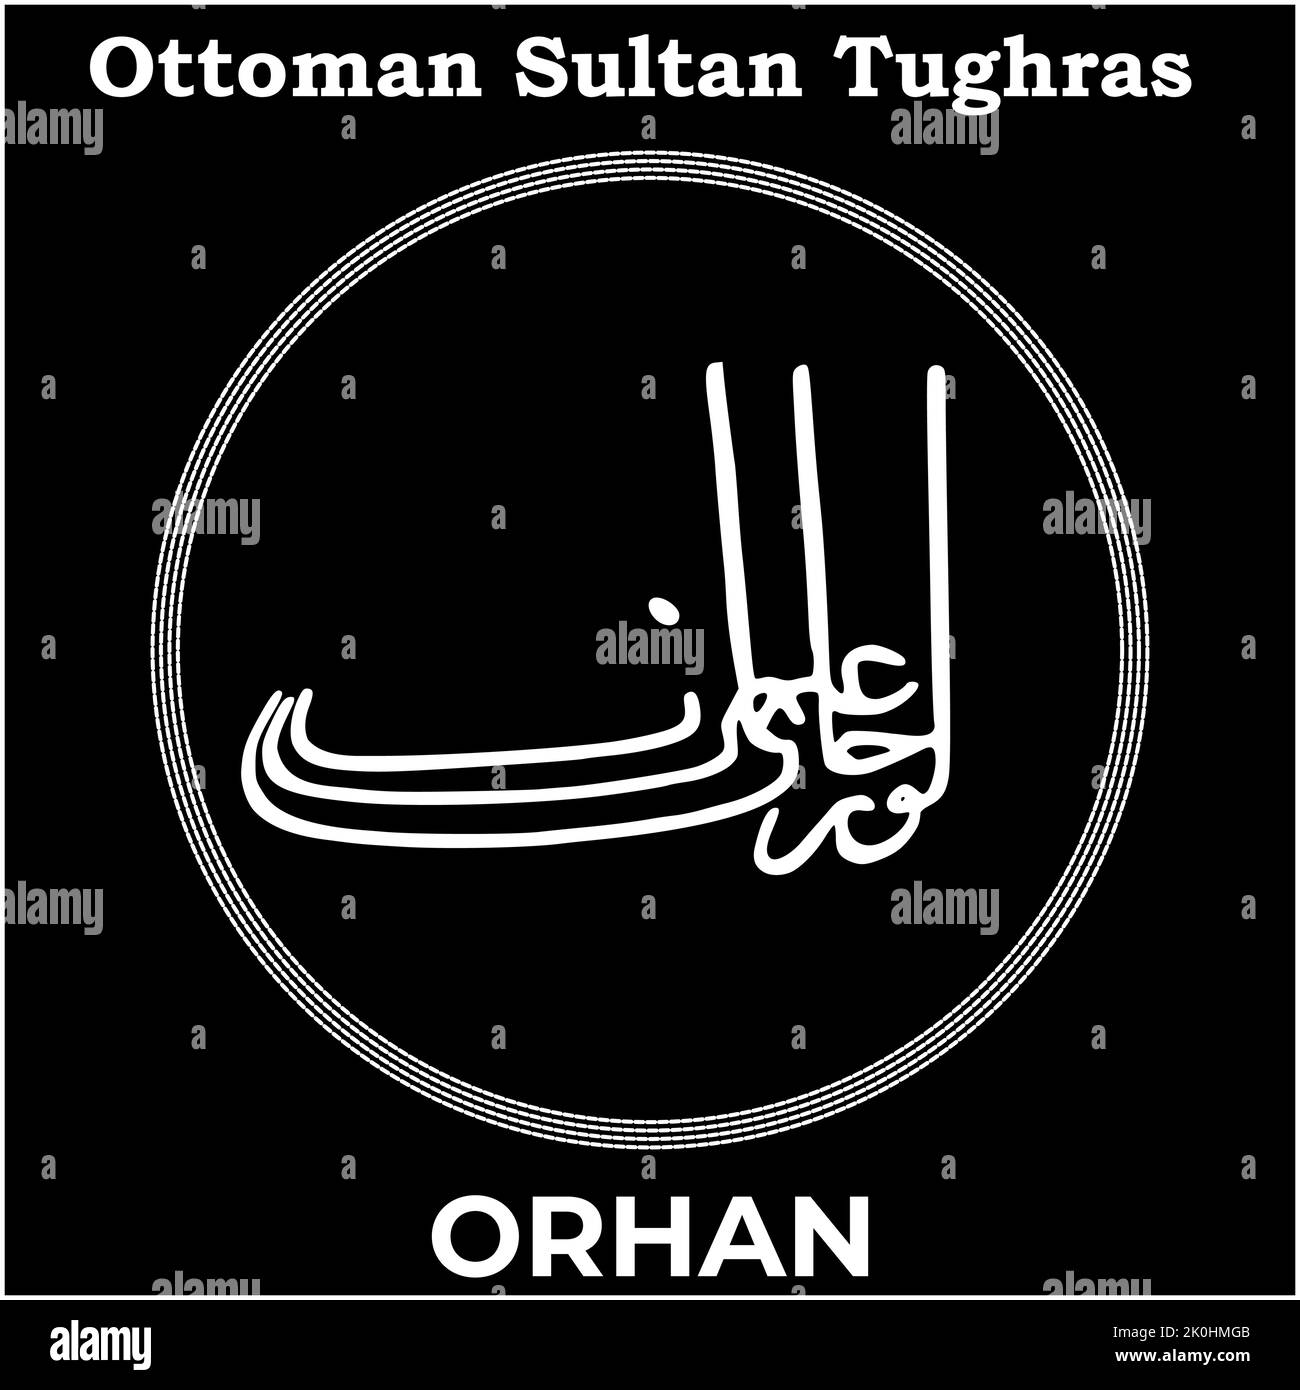 Immagine vettoriale con firma Tughra del secondo sultano ottomano Orhan Ghazi, Tughra di Orhan con sfondo nero. Illustrazione Vettoriale